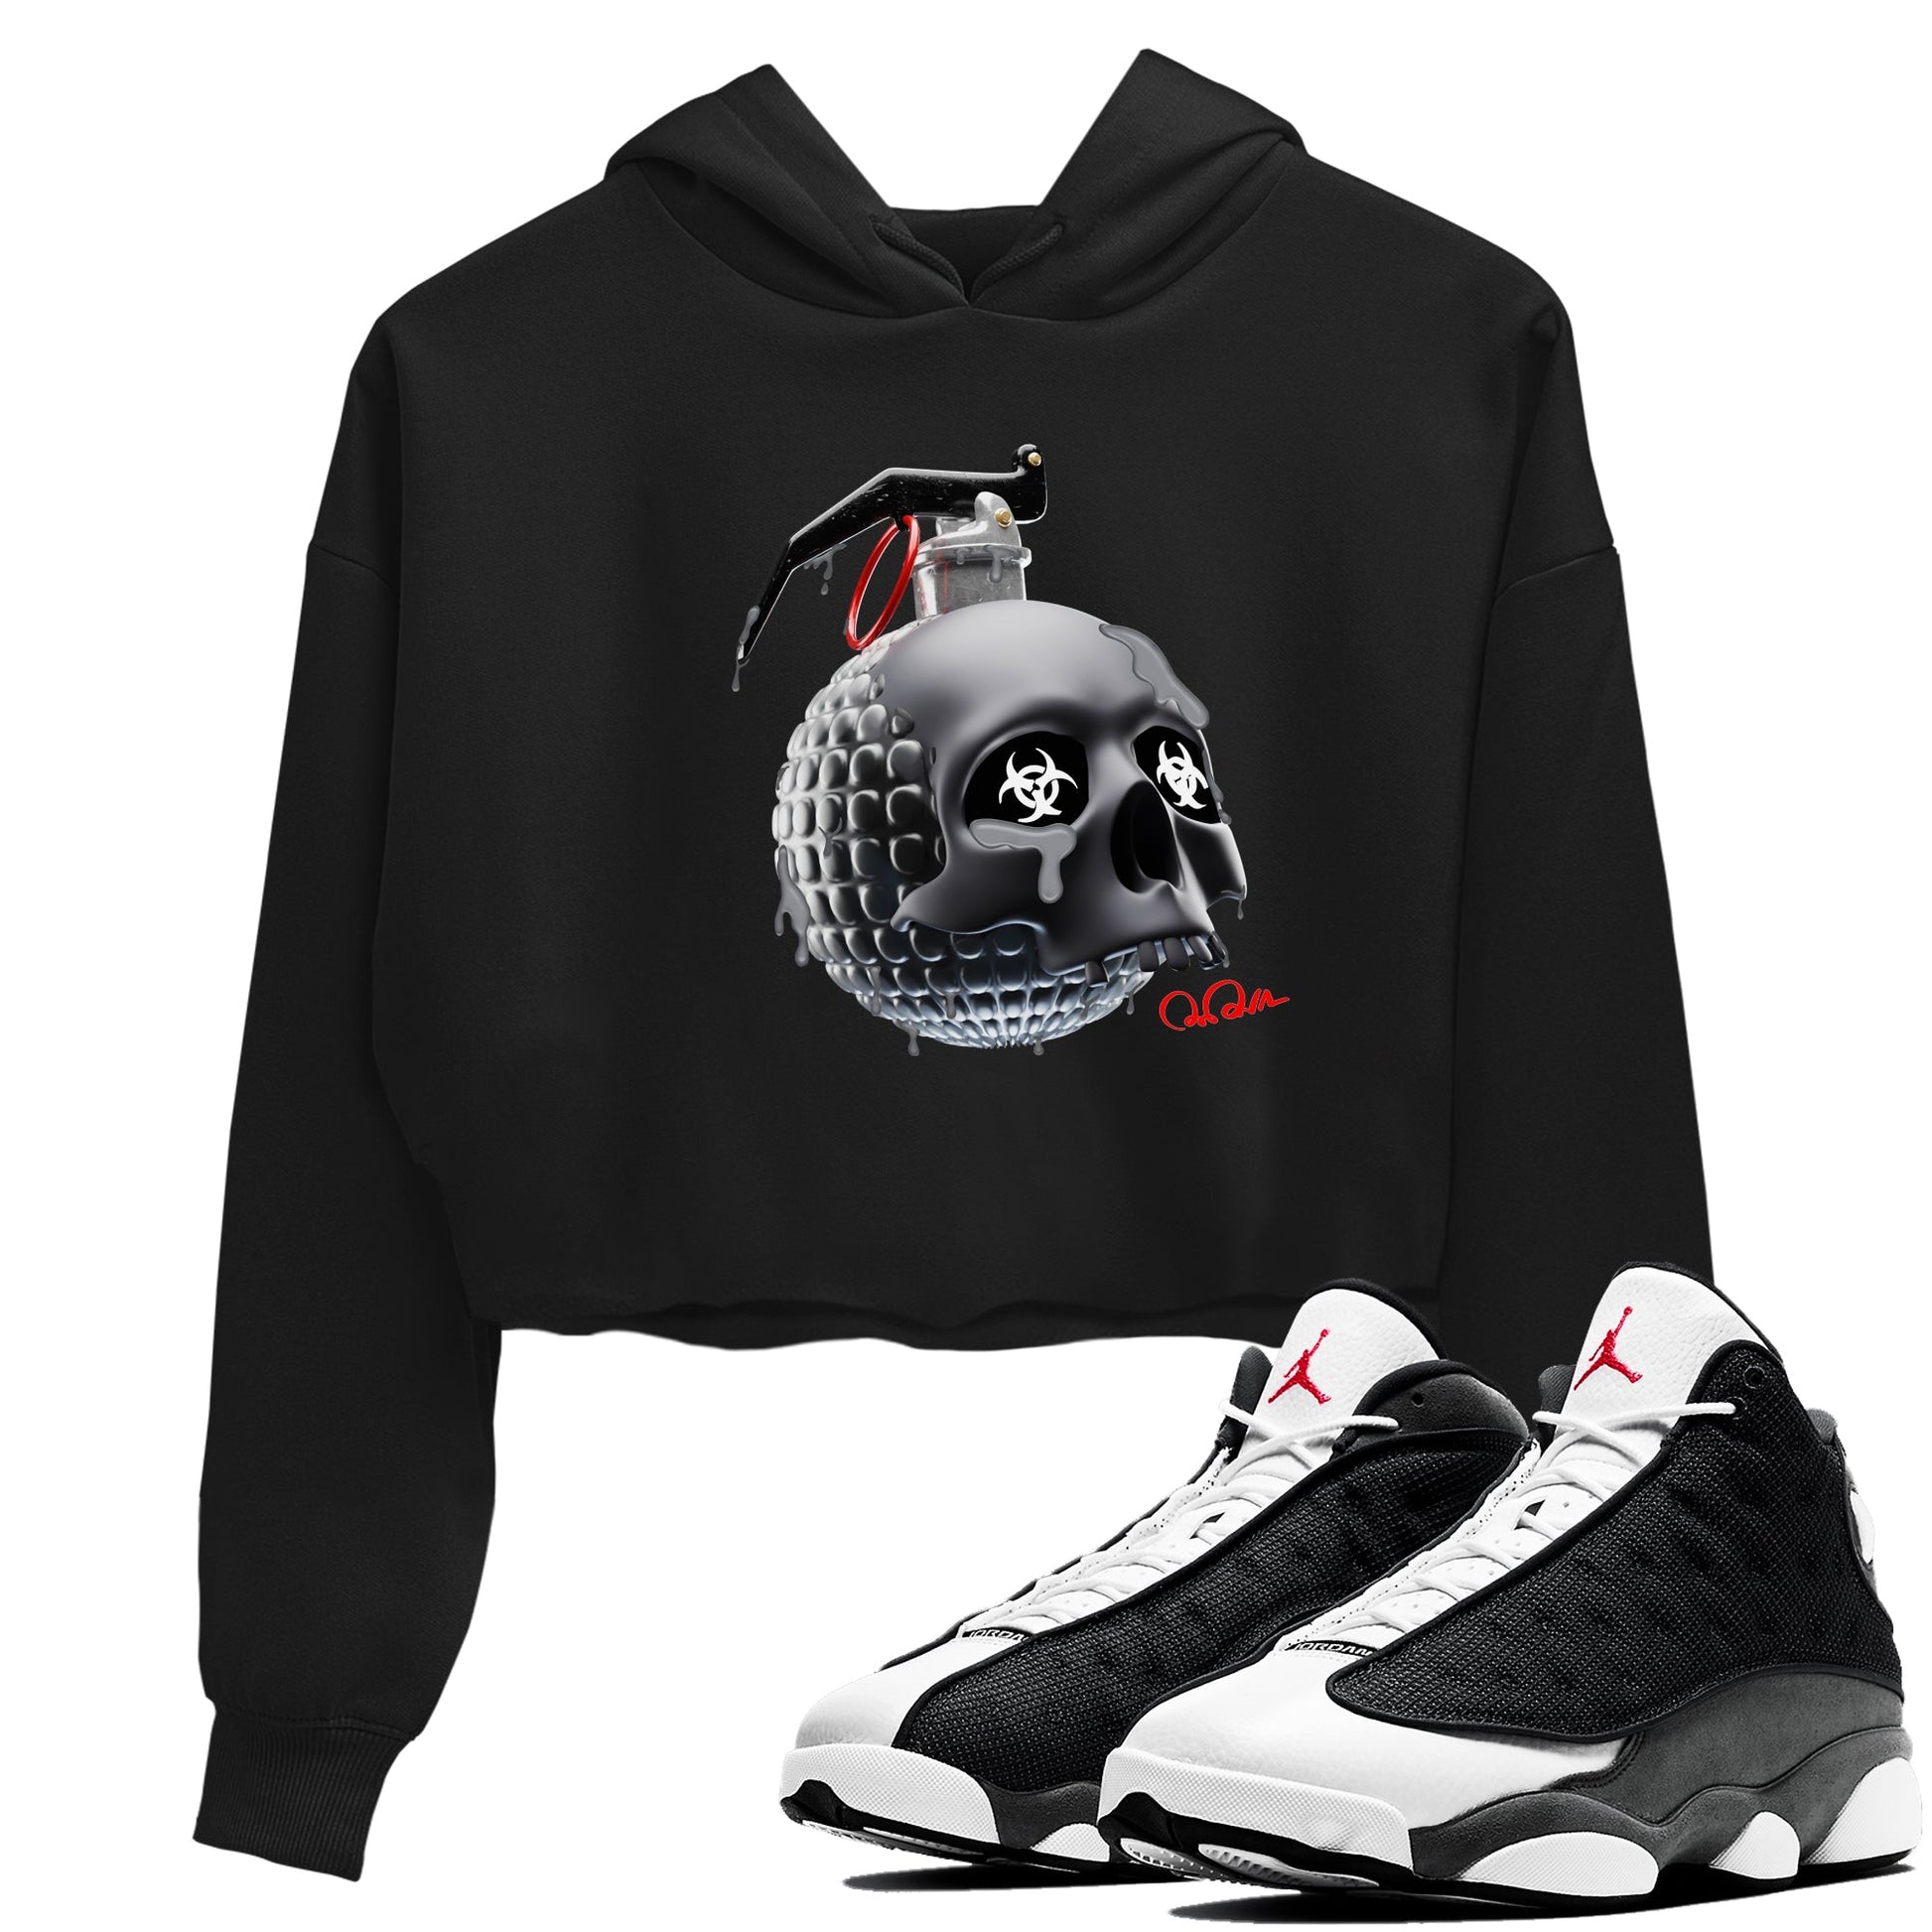 Air Jordan 13 Black Flint Sneaker Tees Drip Gear Zone Skull Bomb Sneaker Tees AJ13 Retro Black Flint Shirt Women's Shirts Black 1